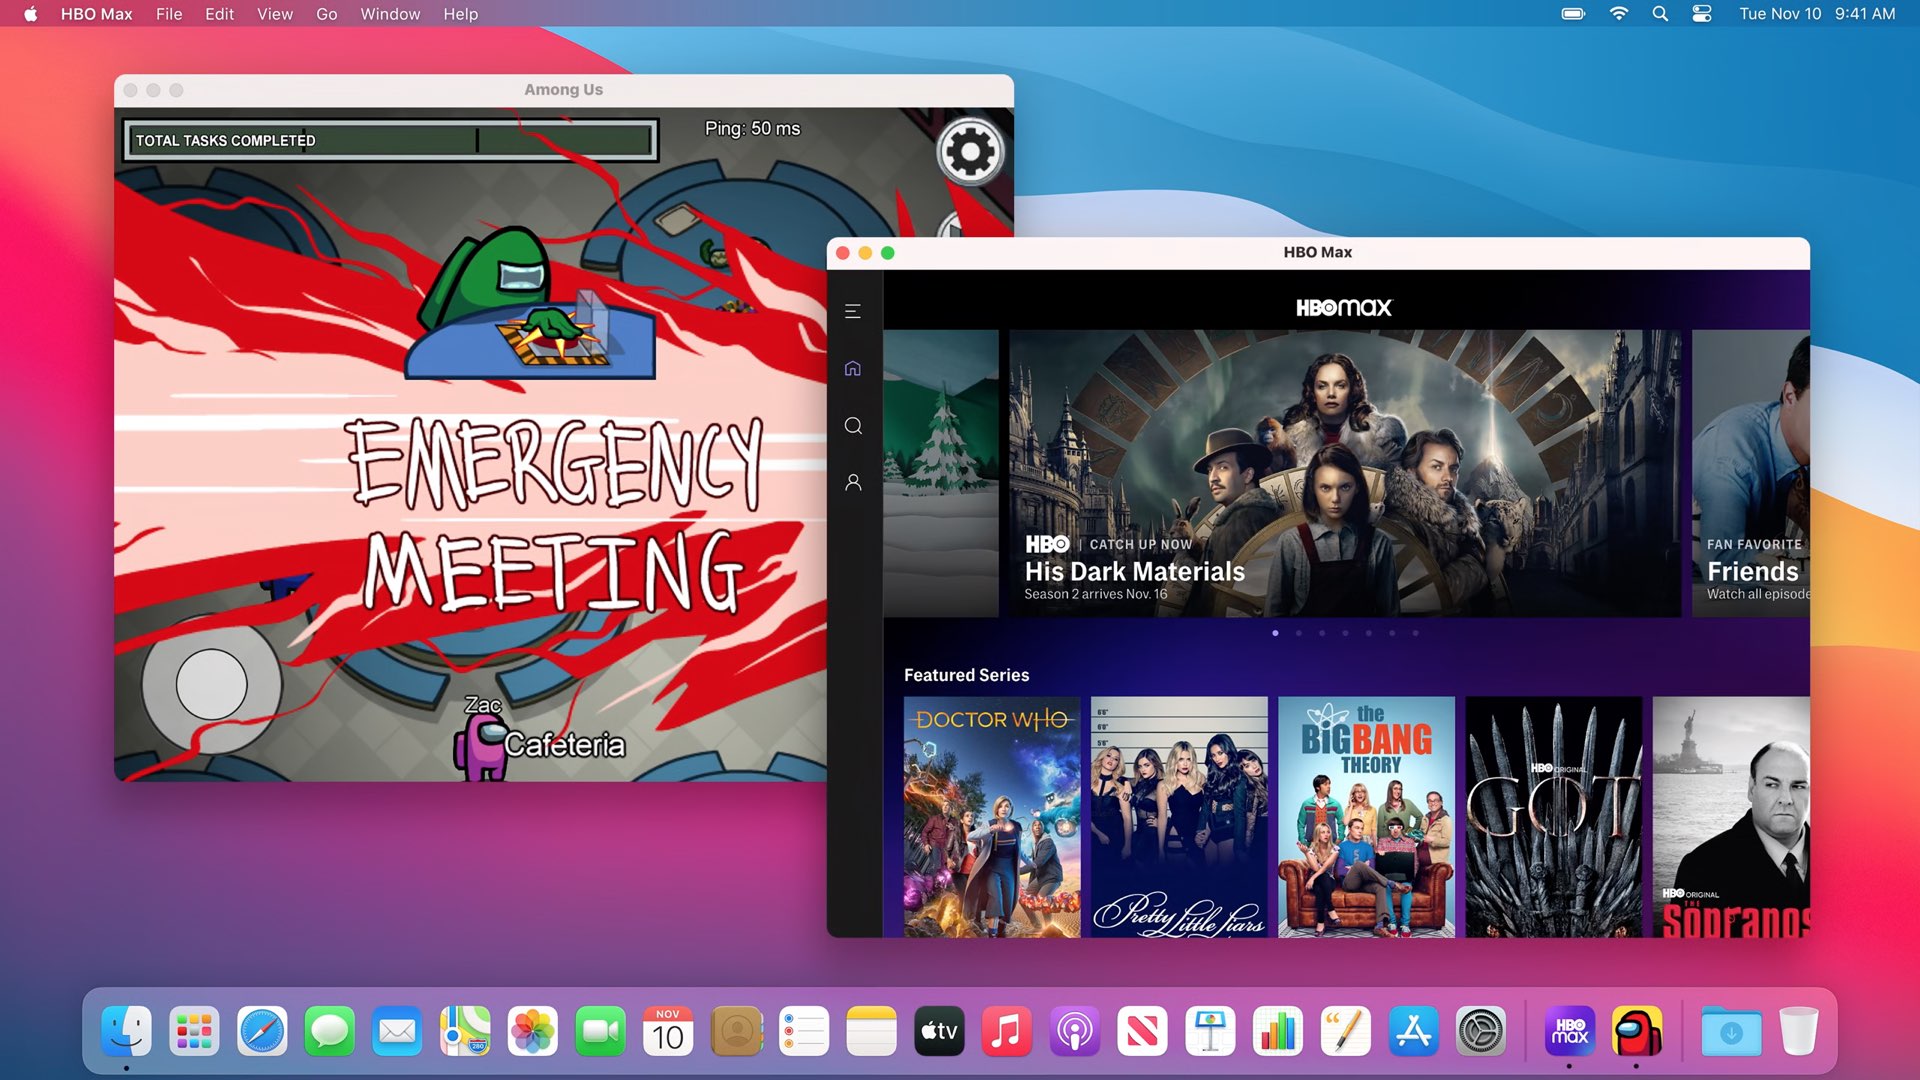 App per iPhone Mac Apple Silicon - Among Us e Netflix in esecuzione su un Mac M1